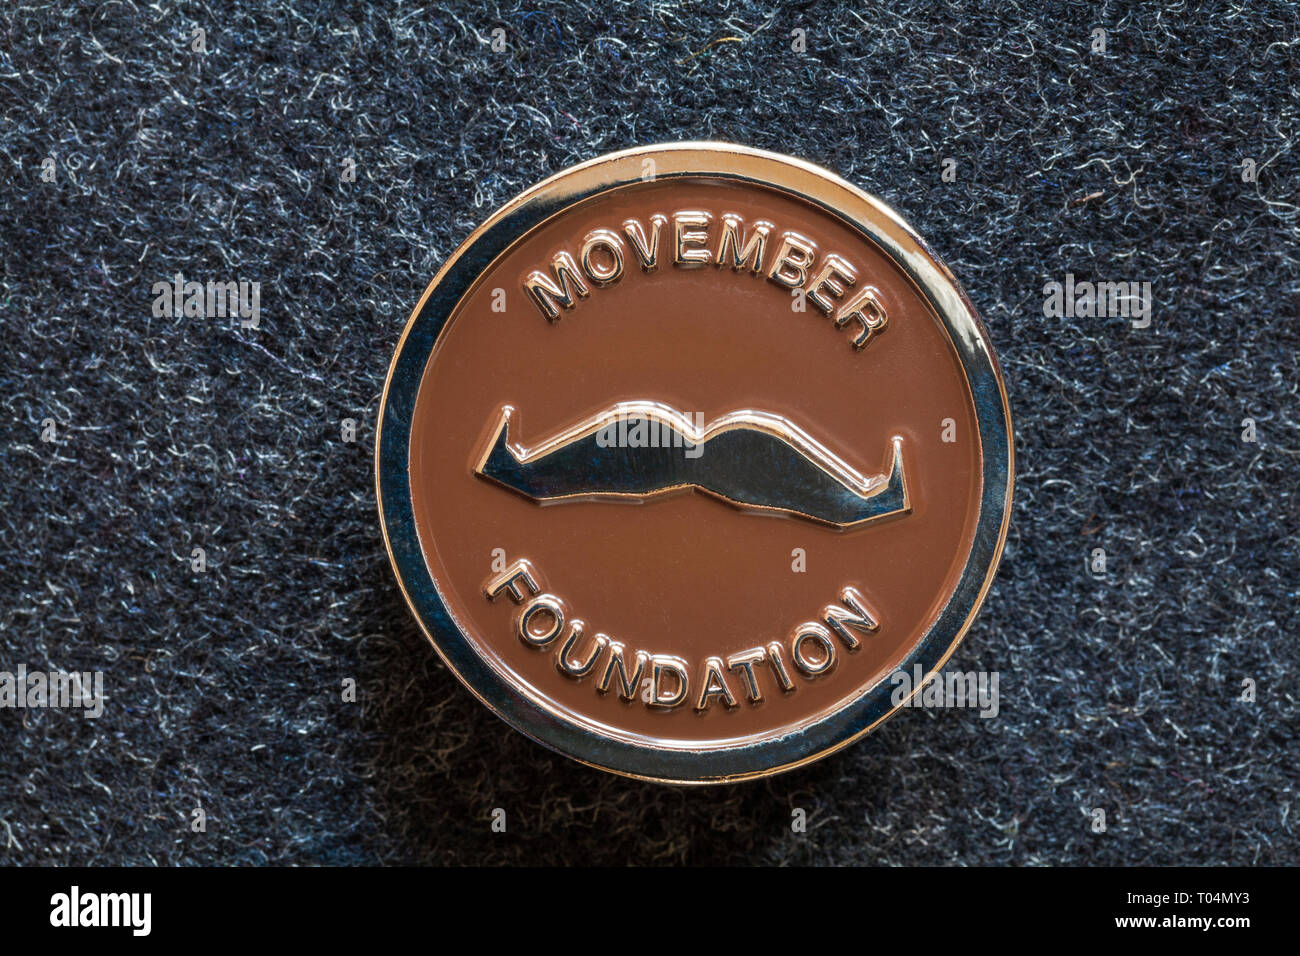 Badge a perno rotondo Movember della Fondazione Movember che aiuta gli uomini a vivere più felici, più sani, più a lungo - Movember Moustache Foto Stock